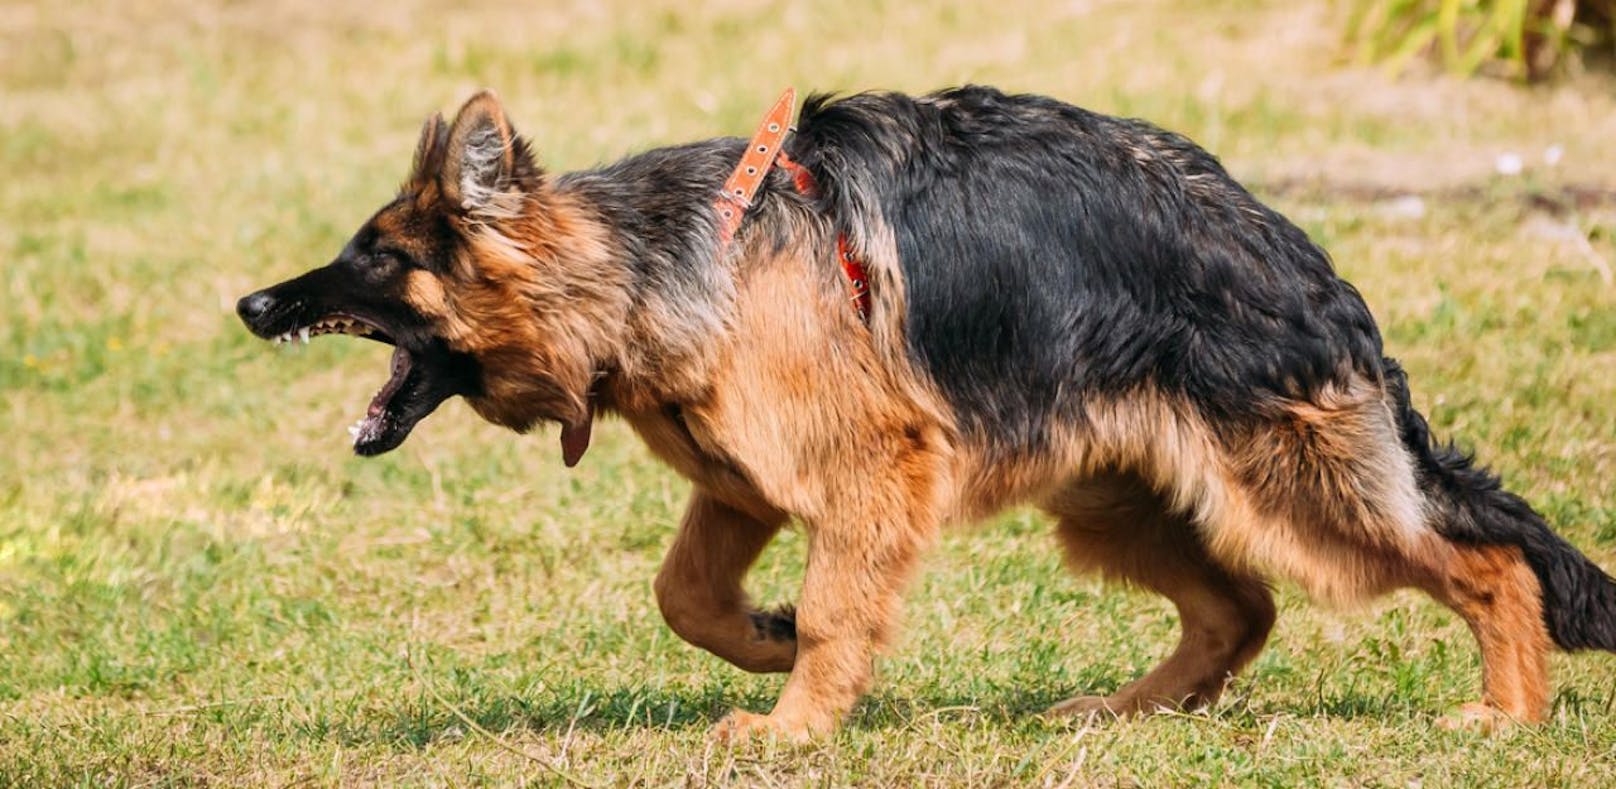 Frau sticht 5 Mal auf Schäfer ein, um Hund zu retten